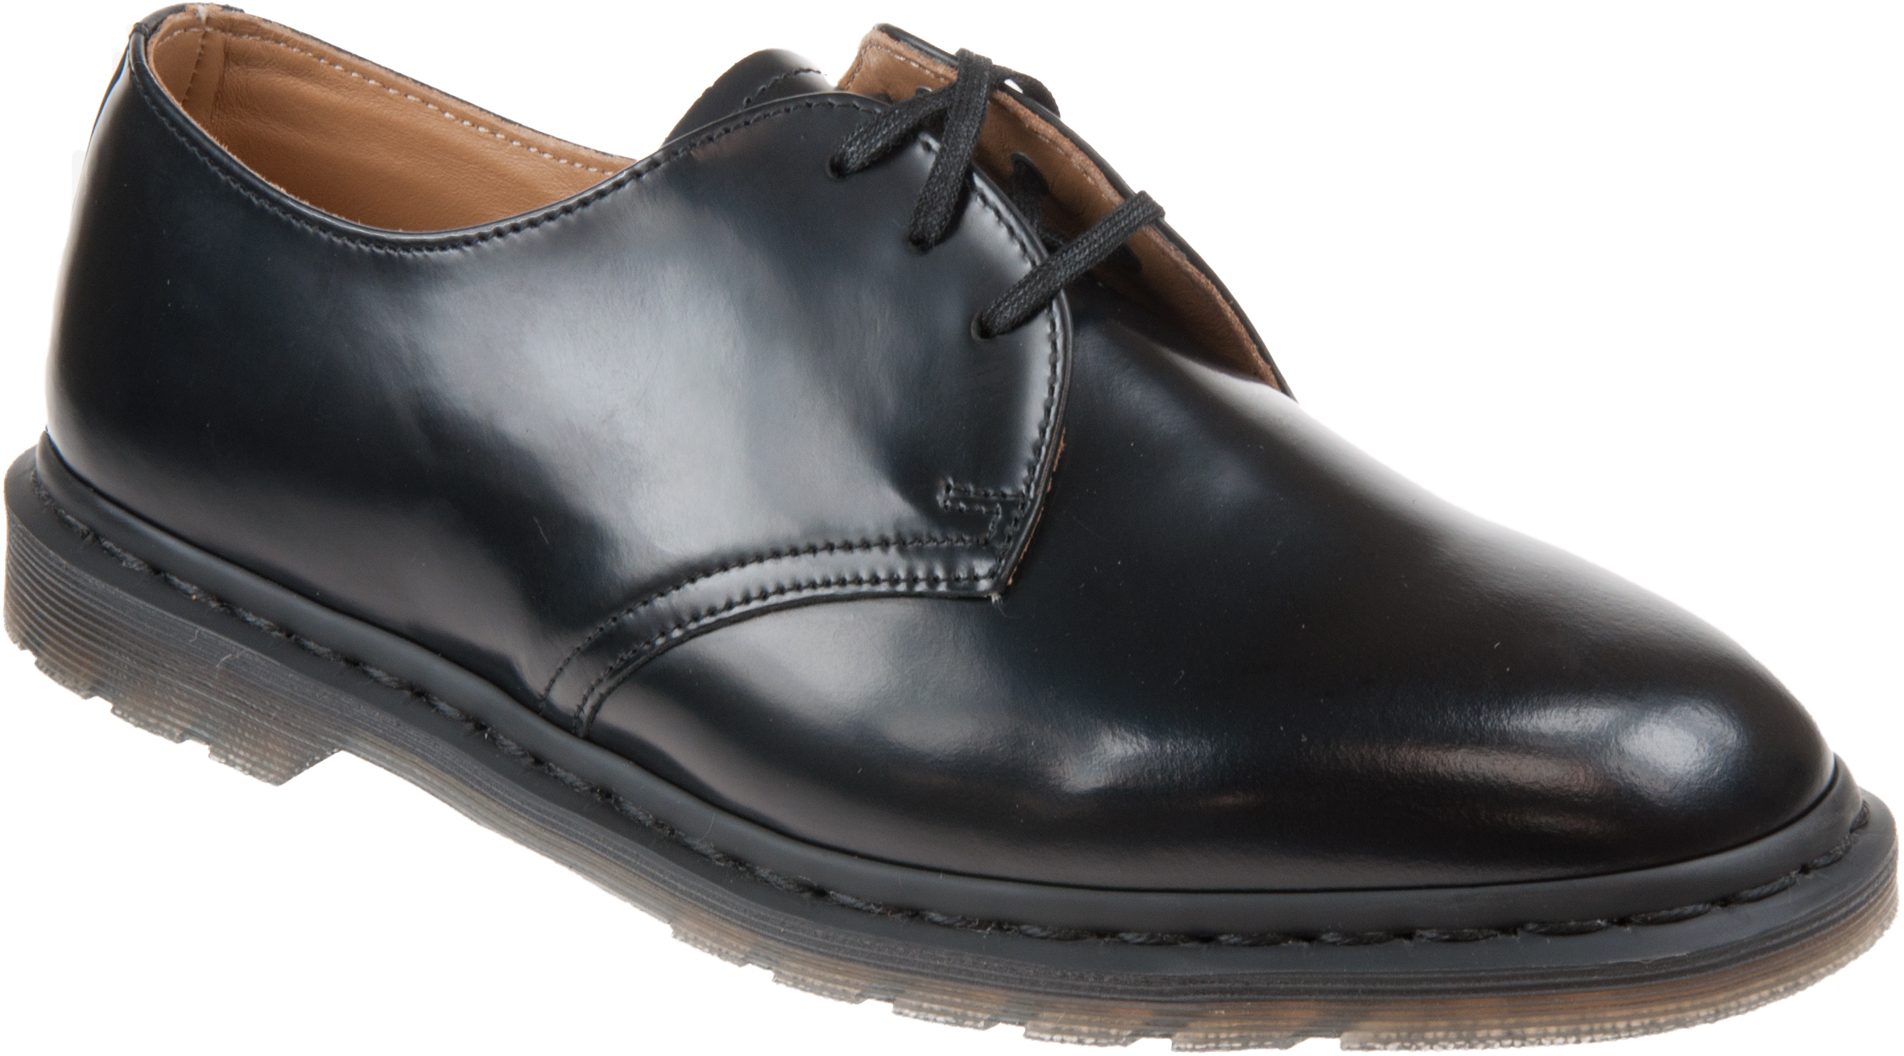 Dr. Martens Archie II Black Polished Smooth 25009001 - Formal Shoes ...